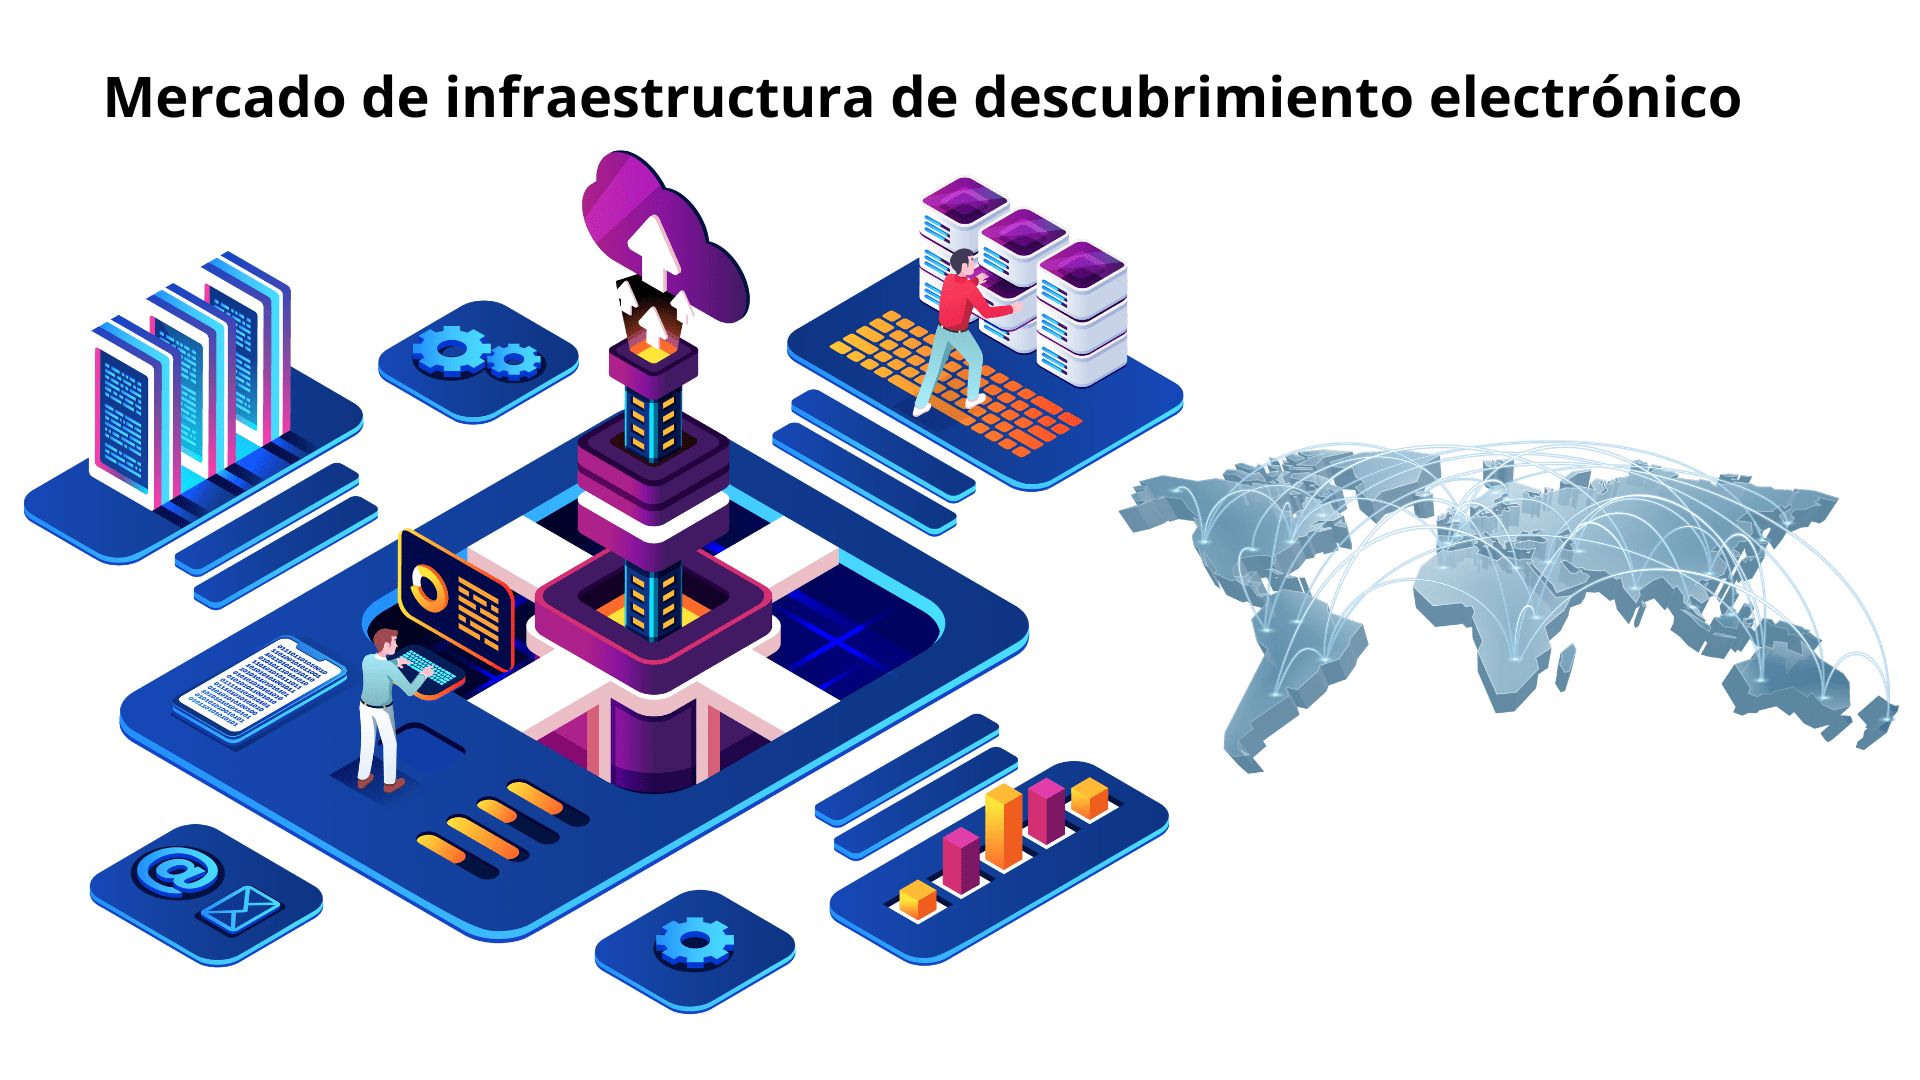 Mercado de infraestructura de descubrimiento electrónico